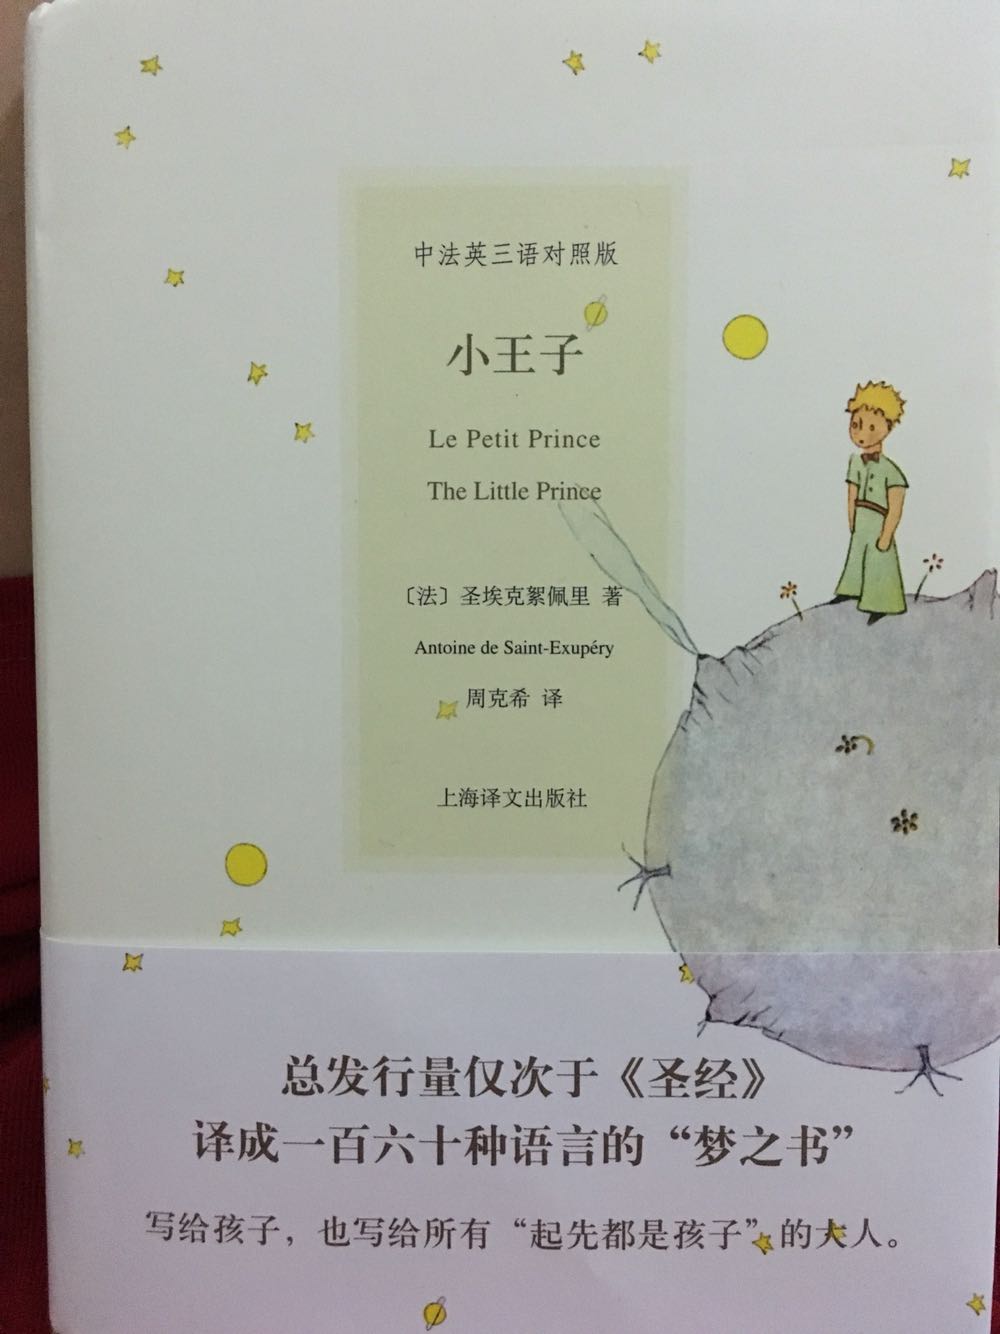 看到有人推荐说这个版本的译文他很喜欢，来感受一下，有三种语言，中，法，英，中文的有插图，喜欢小王子